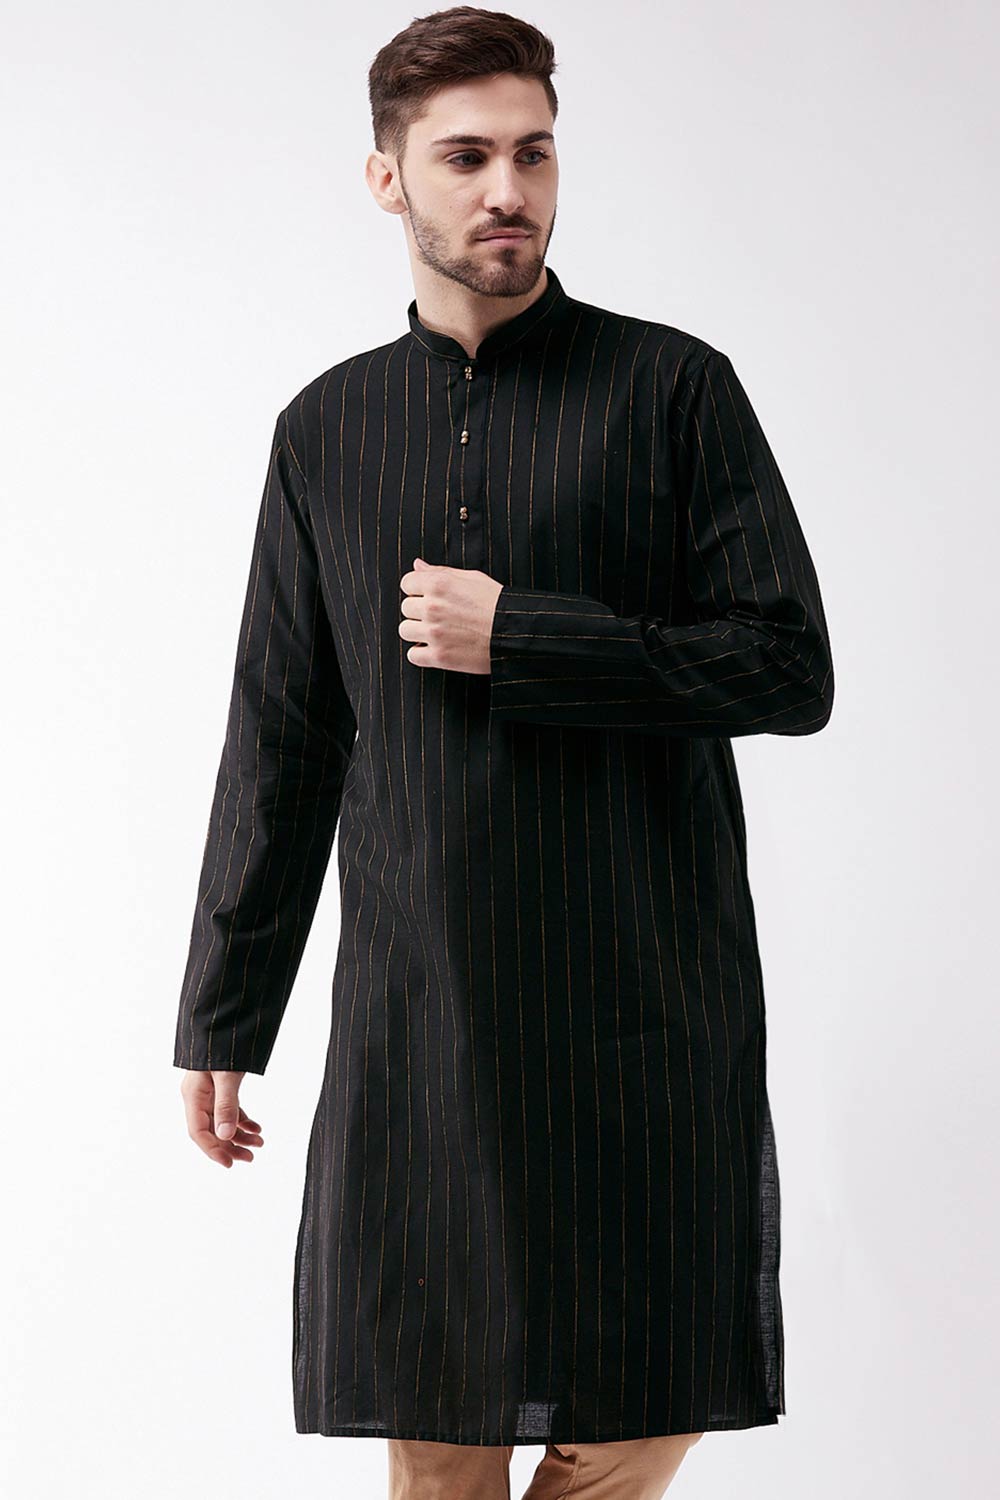 Buy Men's blended Cotton Woven Stripes Kurta in Black